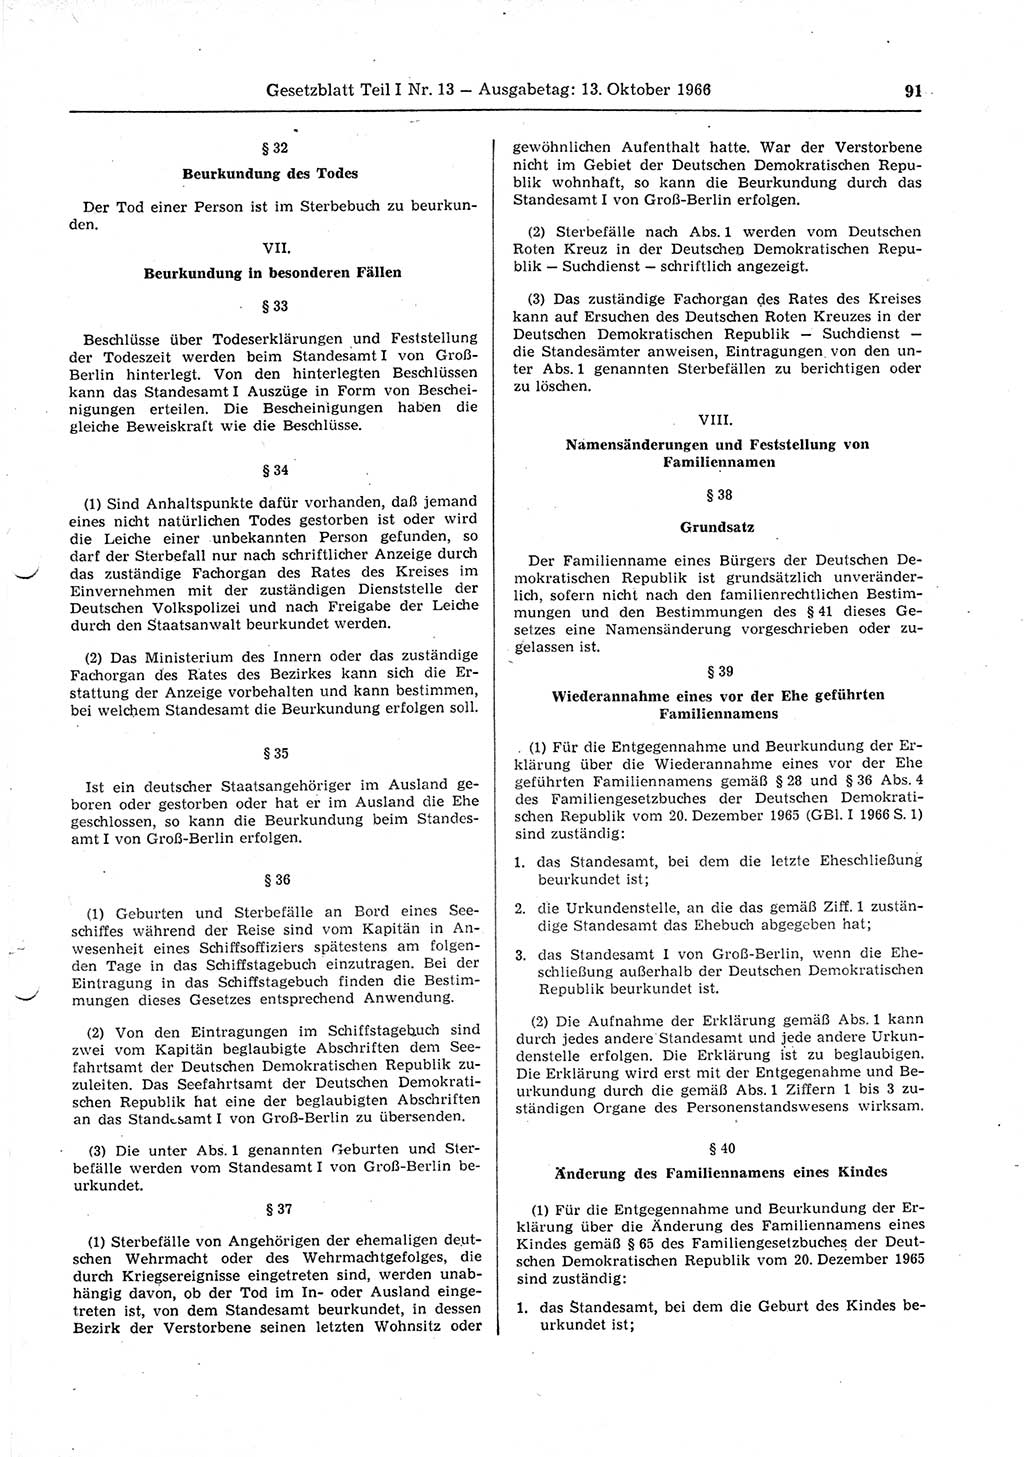 Gesetzblatt (GBl.) der Deutschen Demokratischen Republik (DDR) Teil Ⅰ 1966, Seite 91 (GBl. DDR Ⅰ 1966, S. 91)